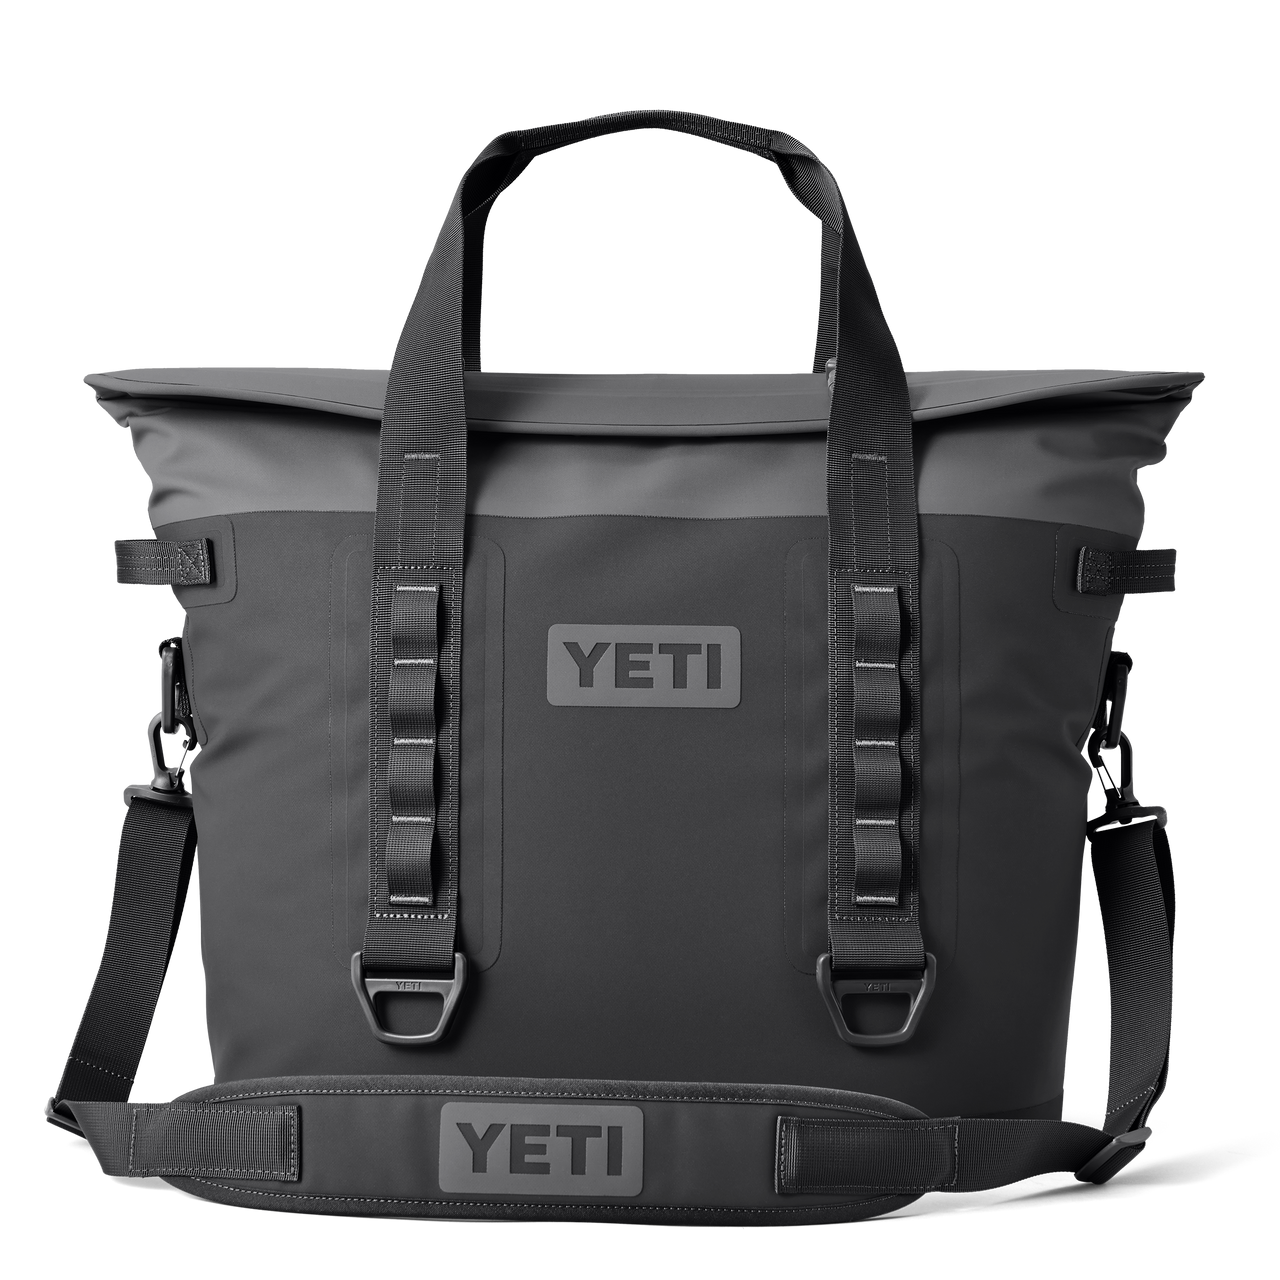 YETI Bags